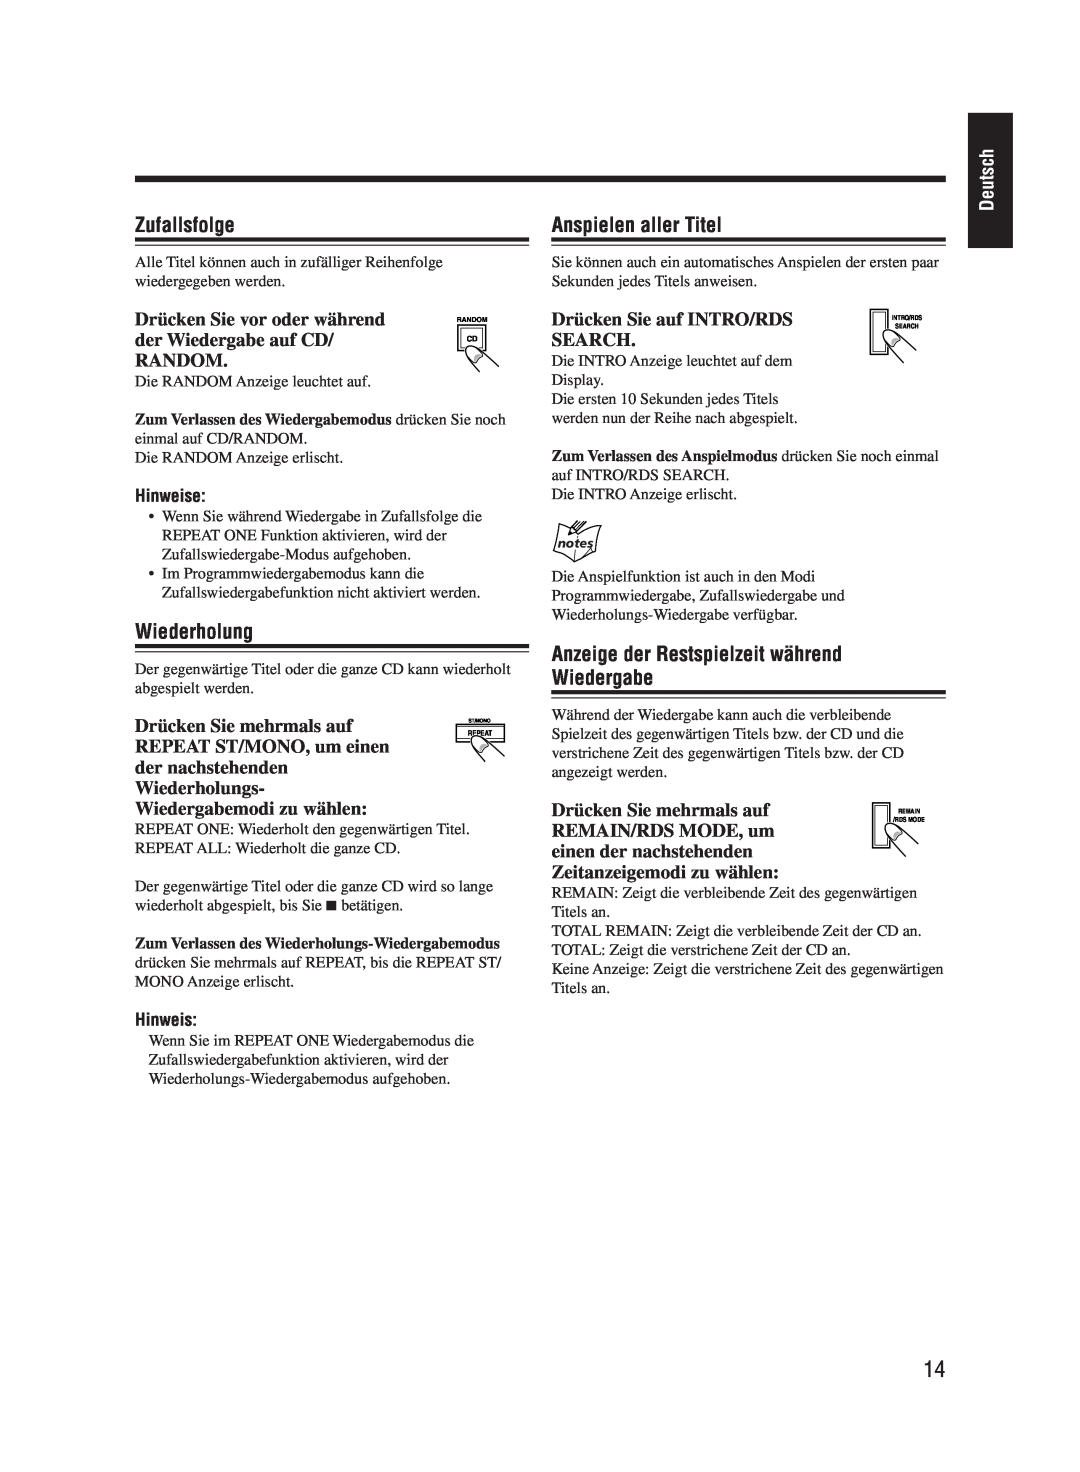 JVC UX-M55 manual Zufallsfolge, Wiederholung, Anspielen aller Titel, Anzeige der Restspielzeit während Wiedergabe, Deutsch 